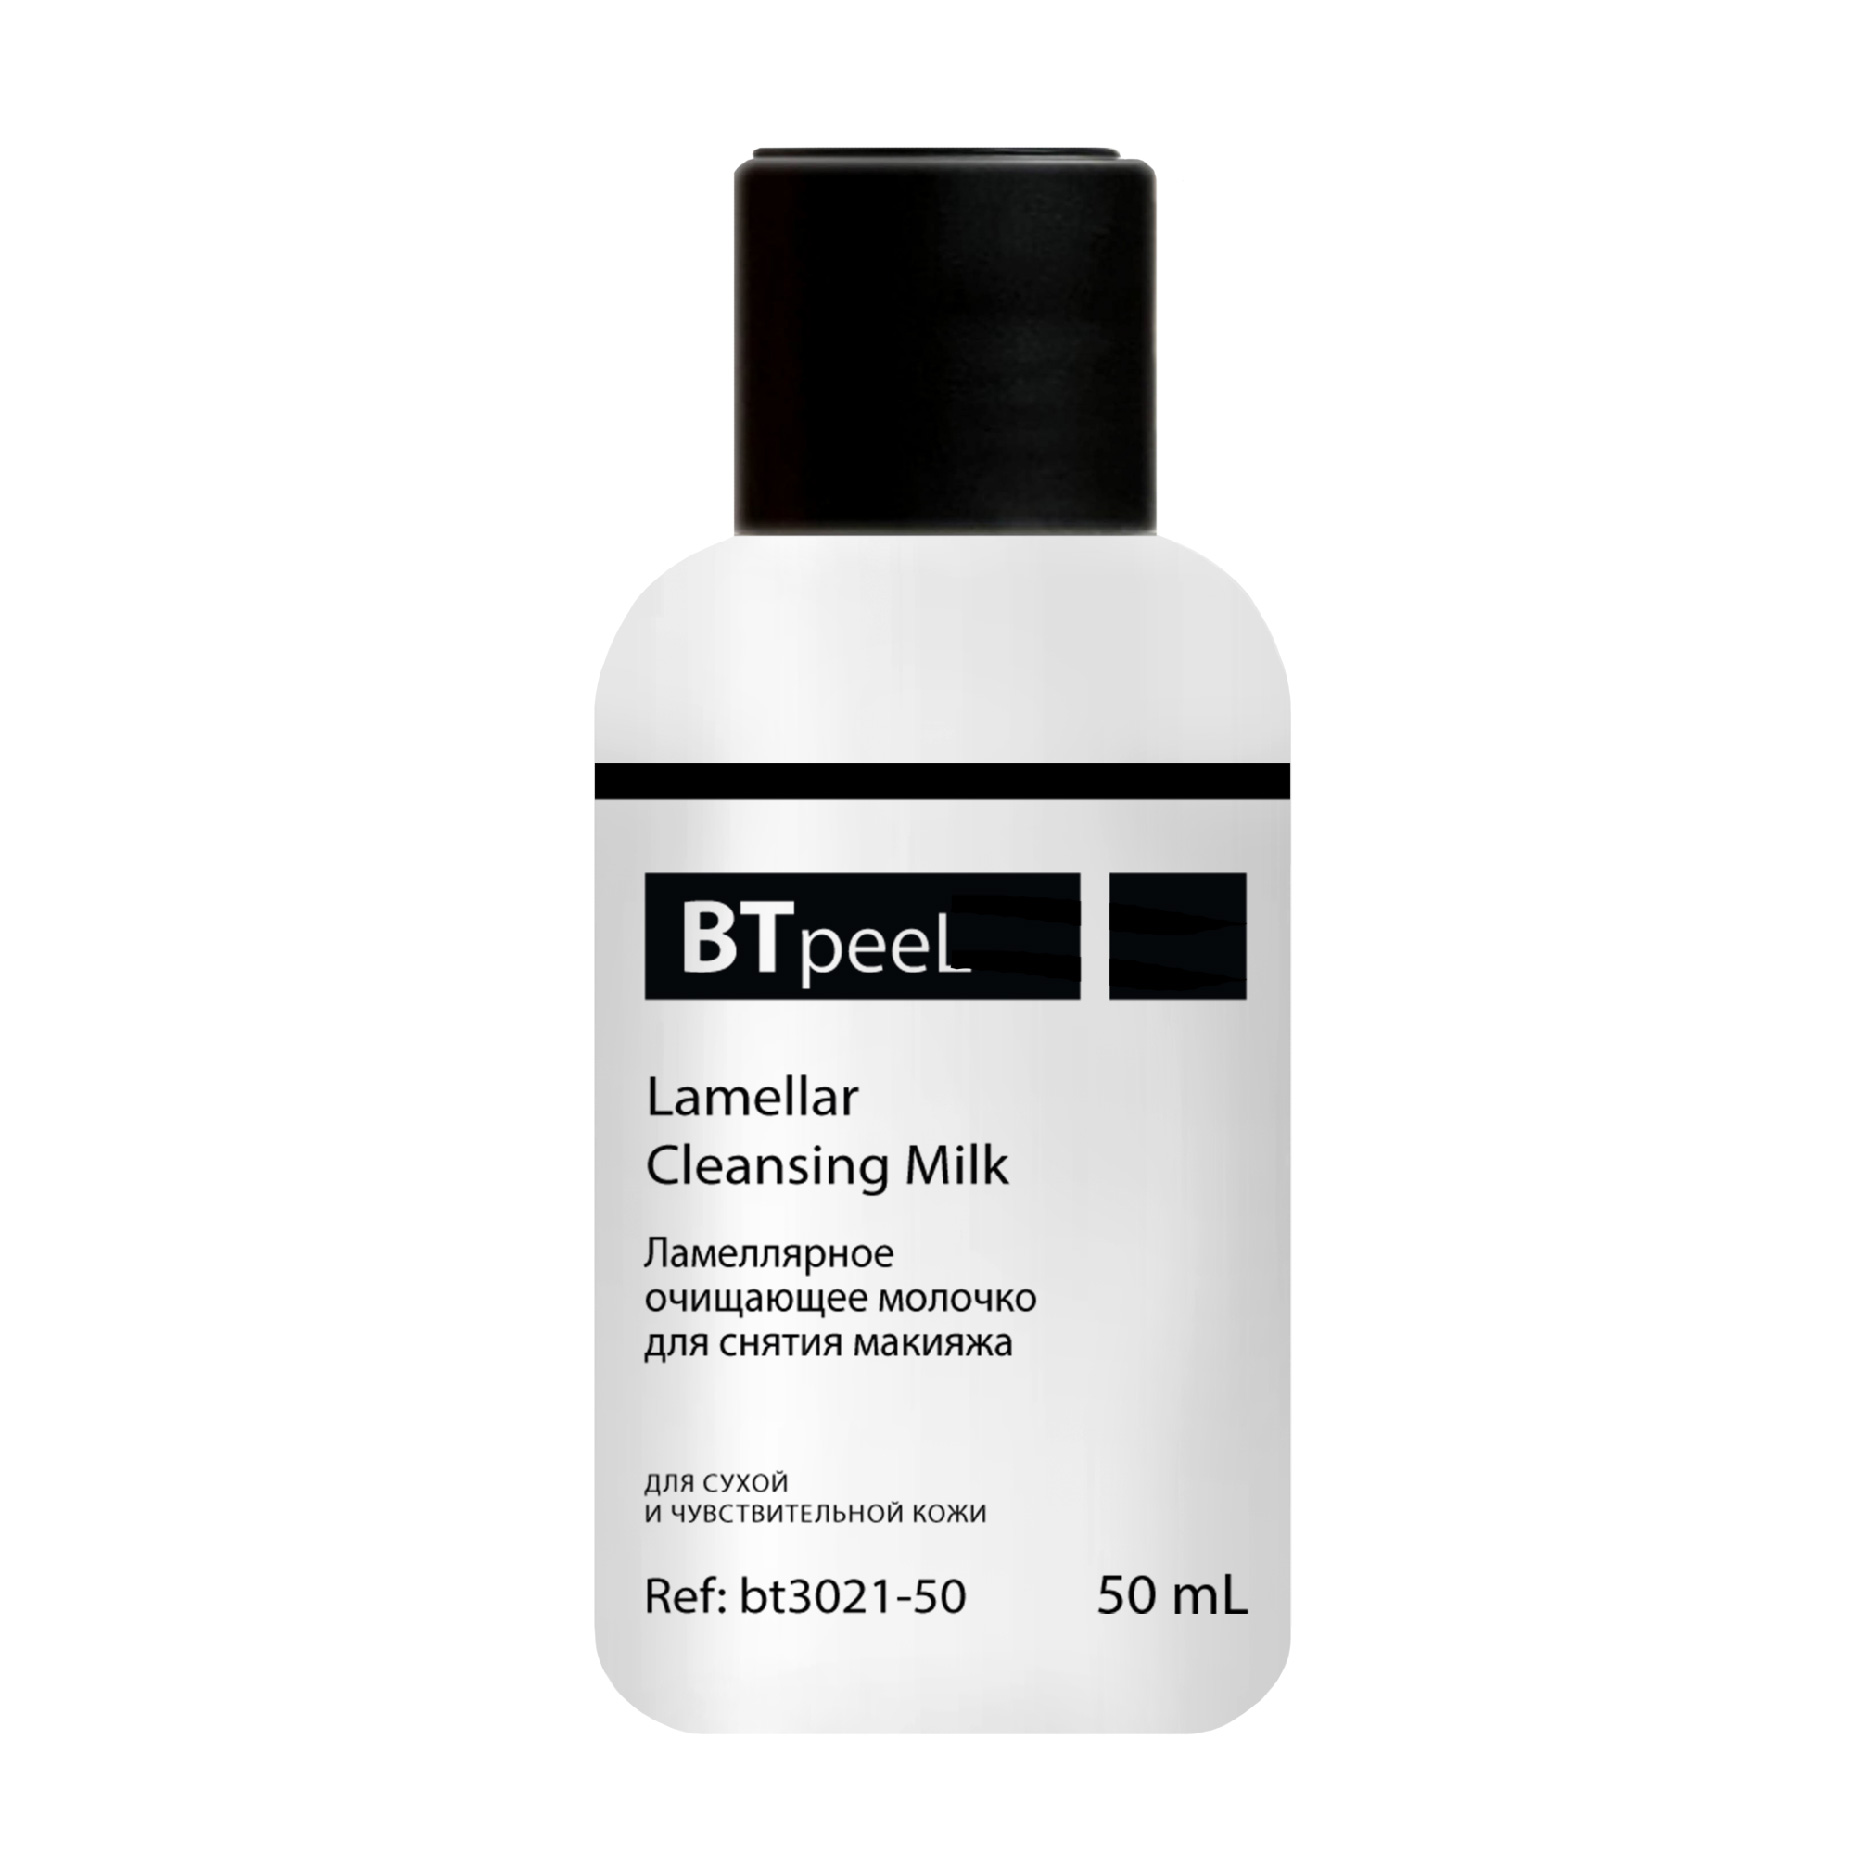 Ламеллярное очищающее молочко BTpeeL для снятия макияжа 50 мл payot мицеллярное молочко для снятия макияжа nue